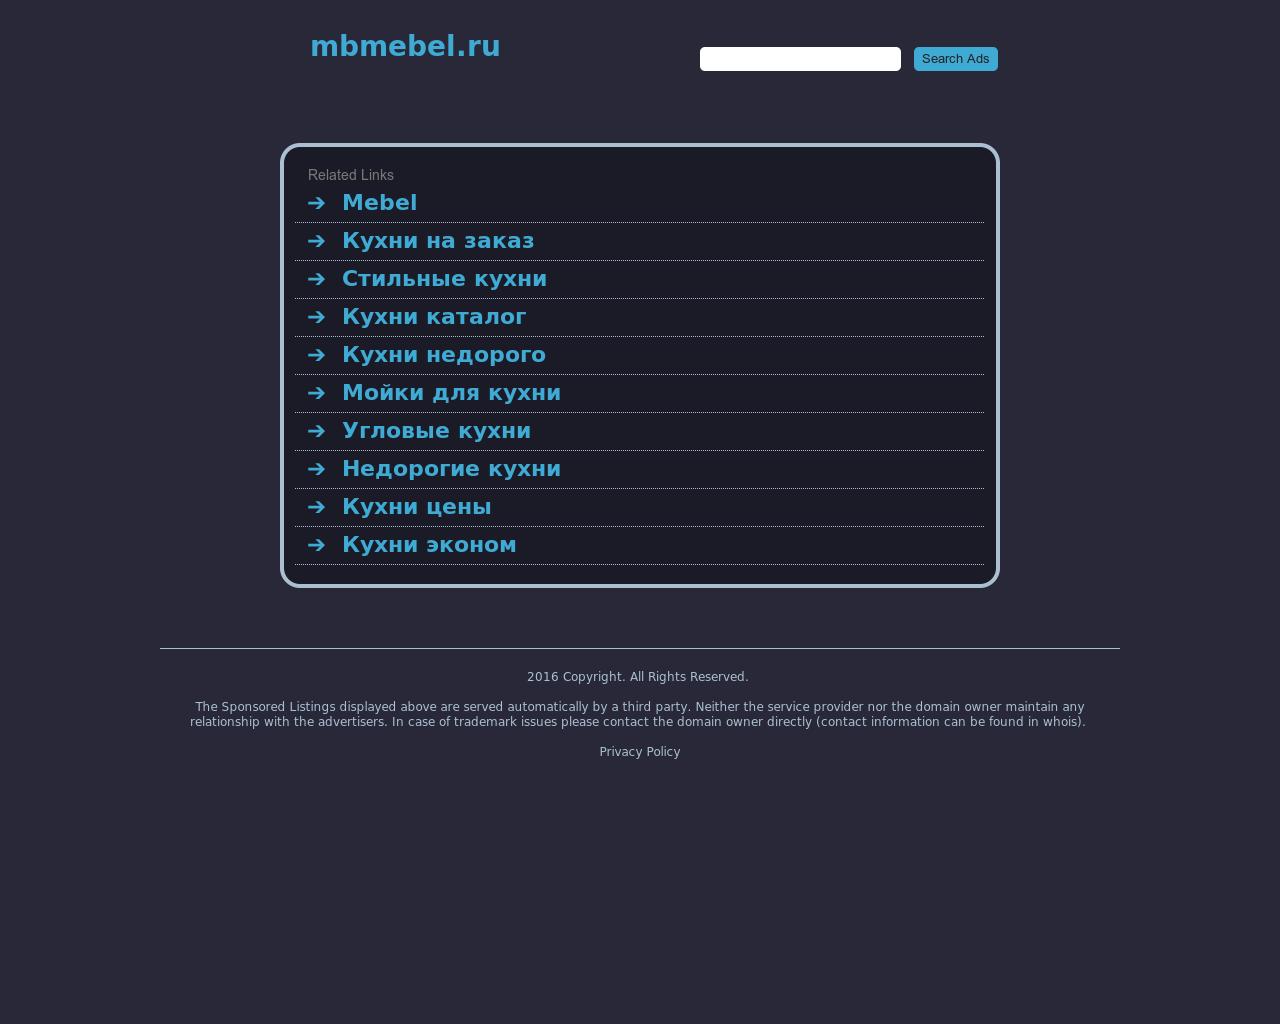 Изображение сайта mbmebel.ru в разрешении 1280x1024